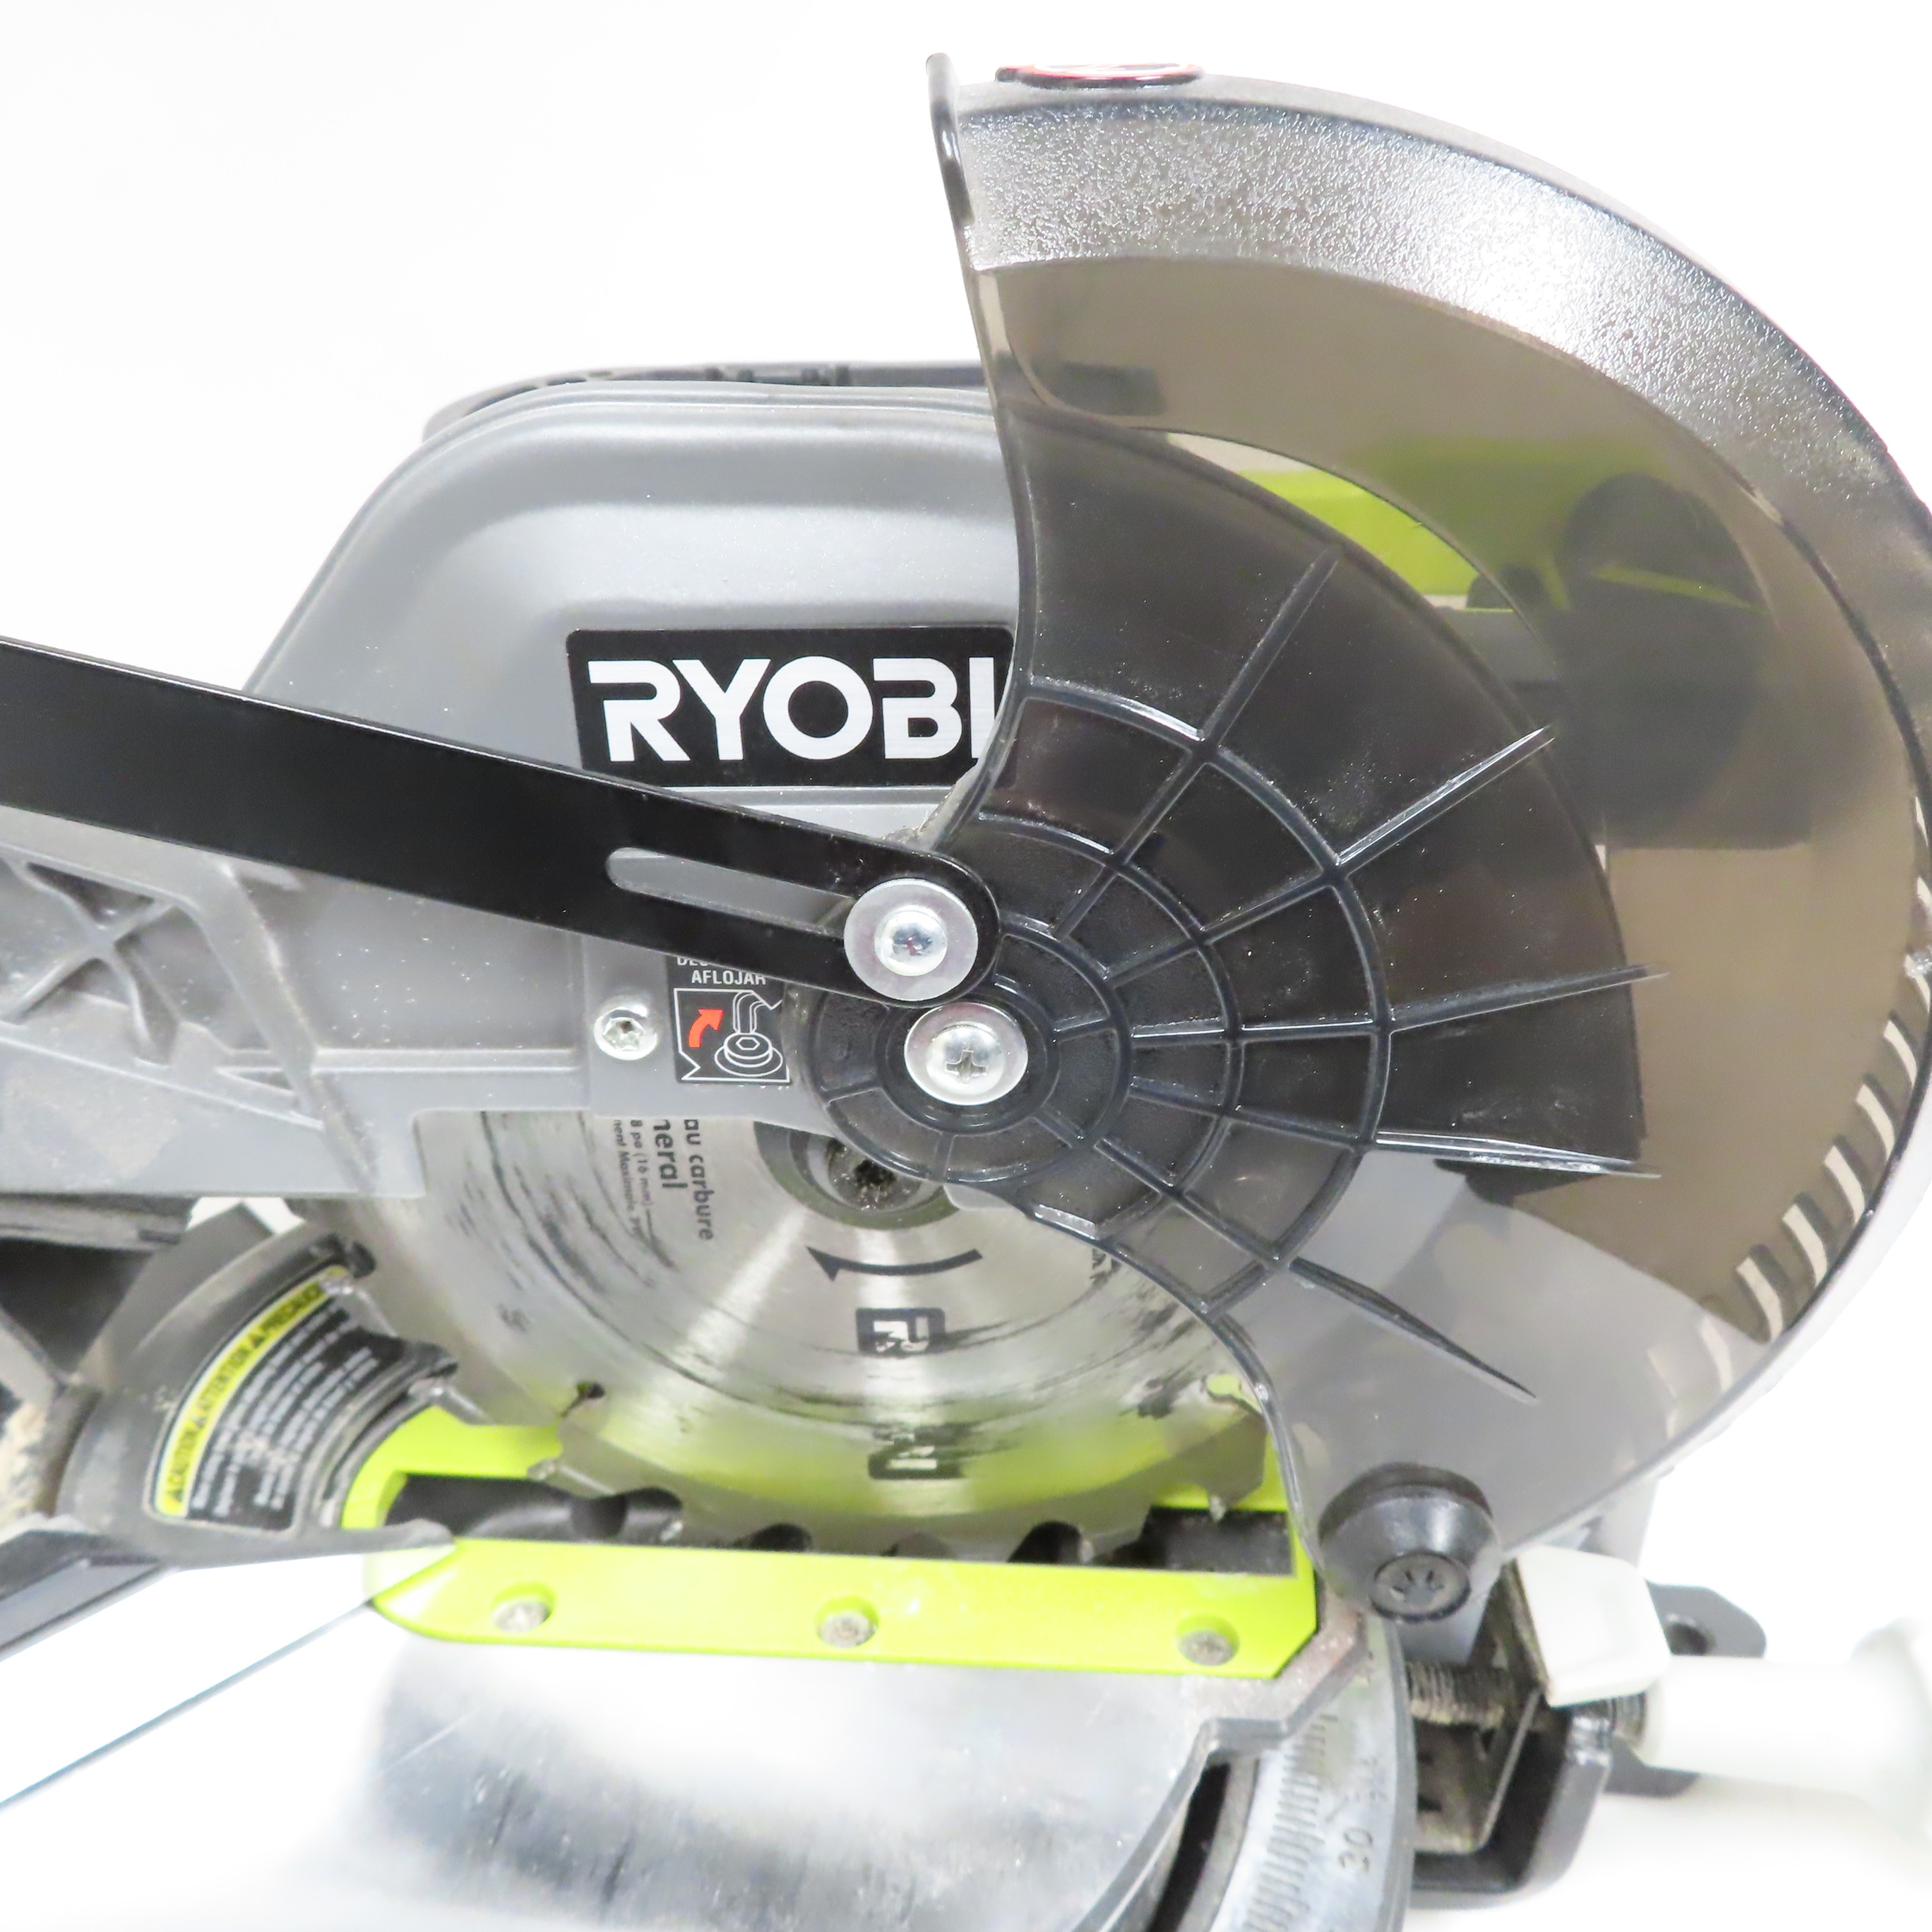 RYOBI ONE+ 18V Cordless 7-1/4 in. Sliding Compound Miter Saw